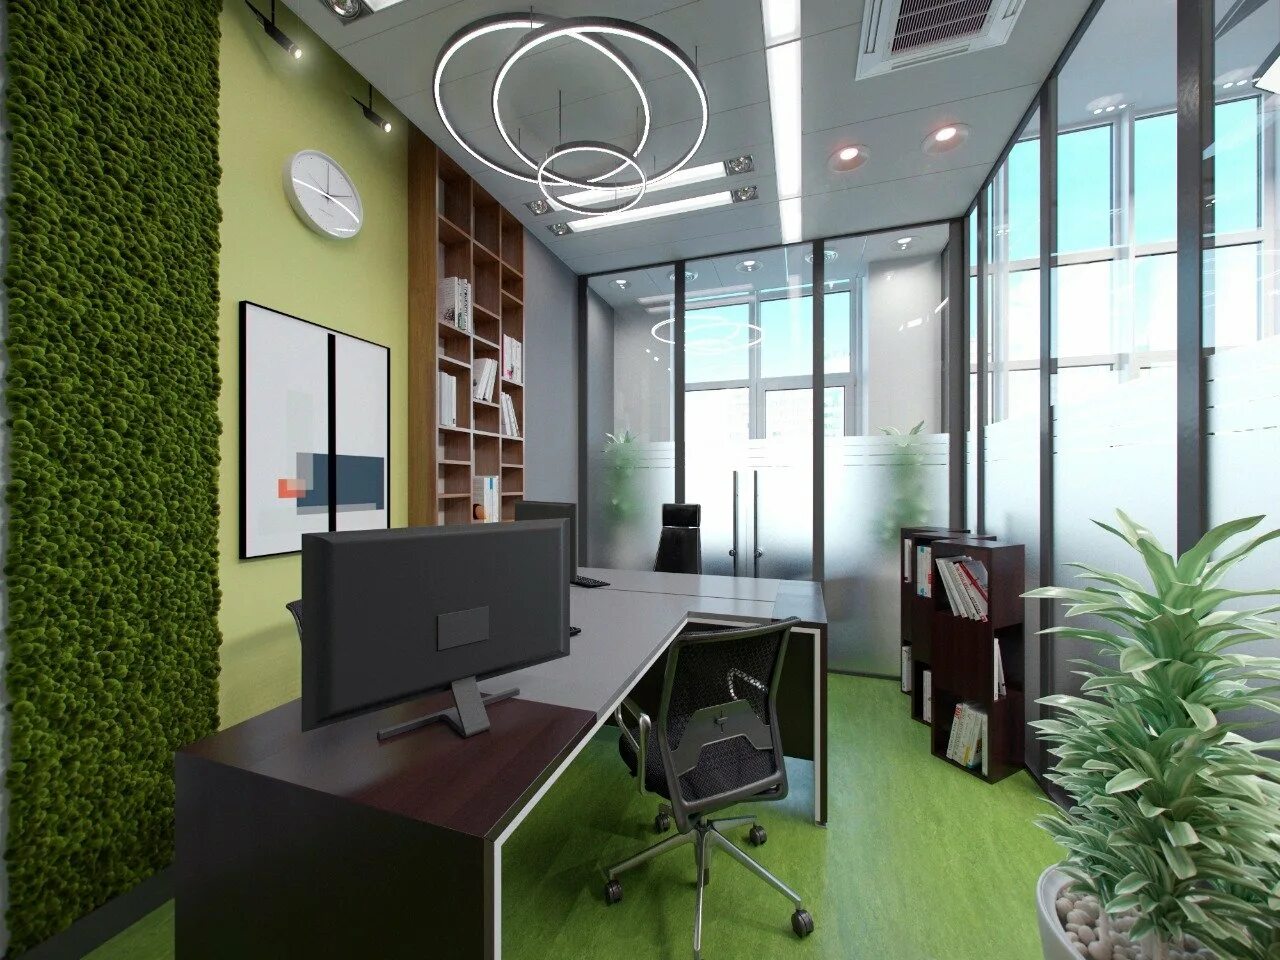 Купить помещение офиса. "Зеленый офис. ECOGREENOFFICE".. Интерьер офиса. Современный офис интерьер. Красивый офис.